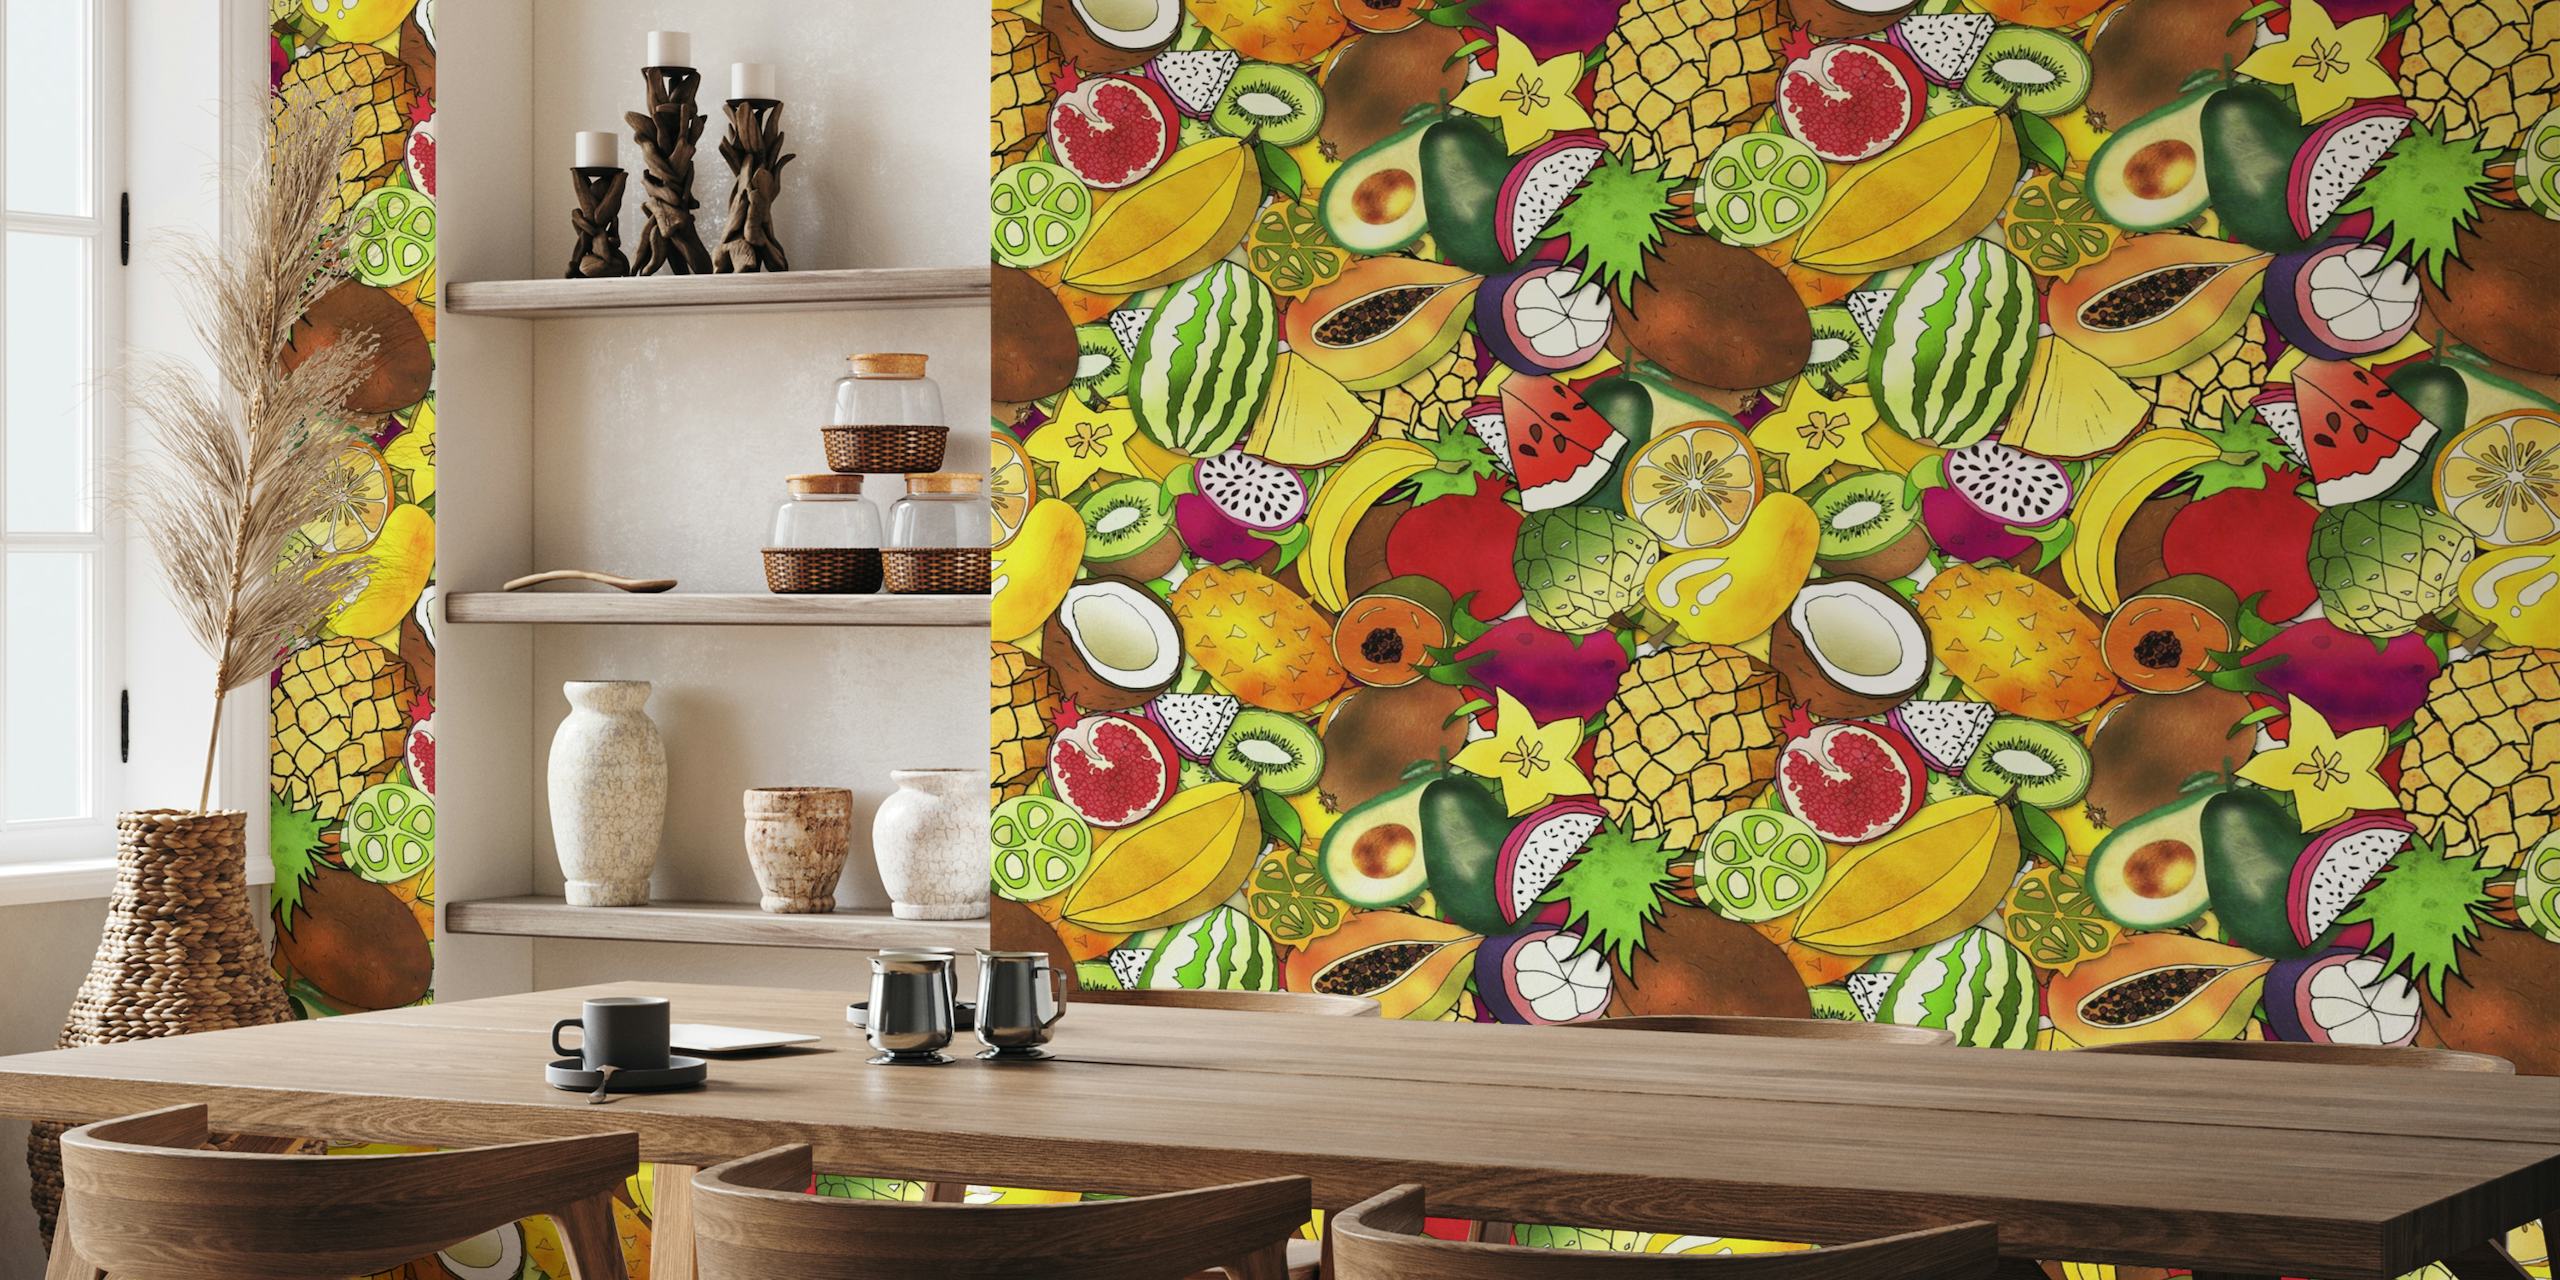 Maximalist Tropical Fruit Salad wallpaper